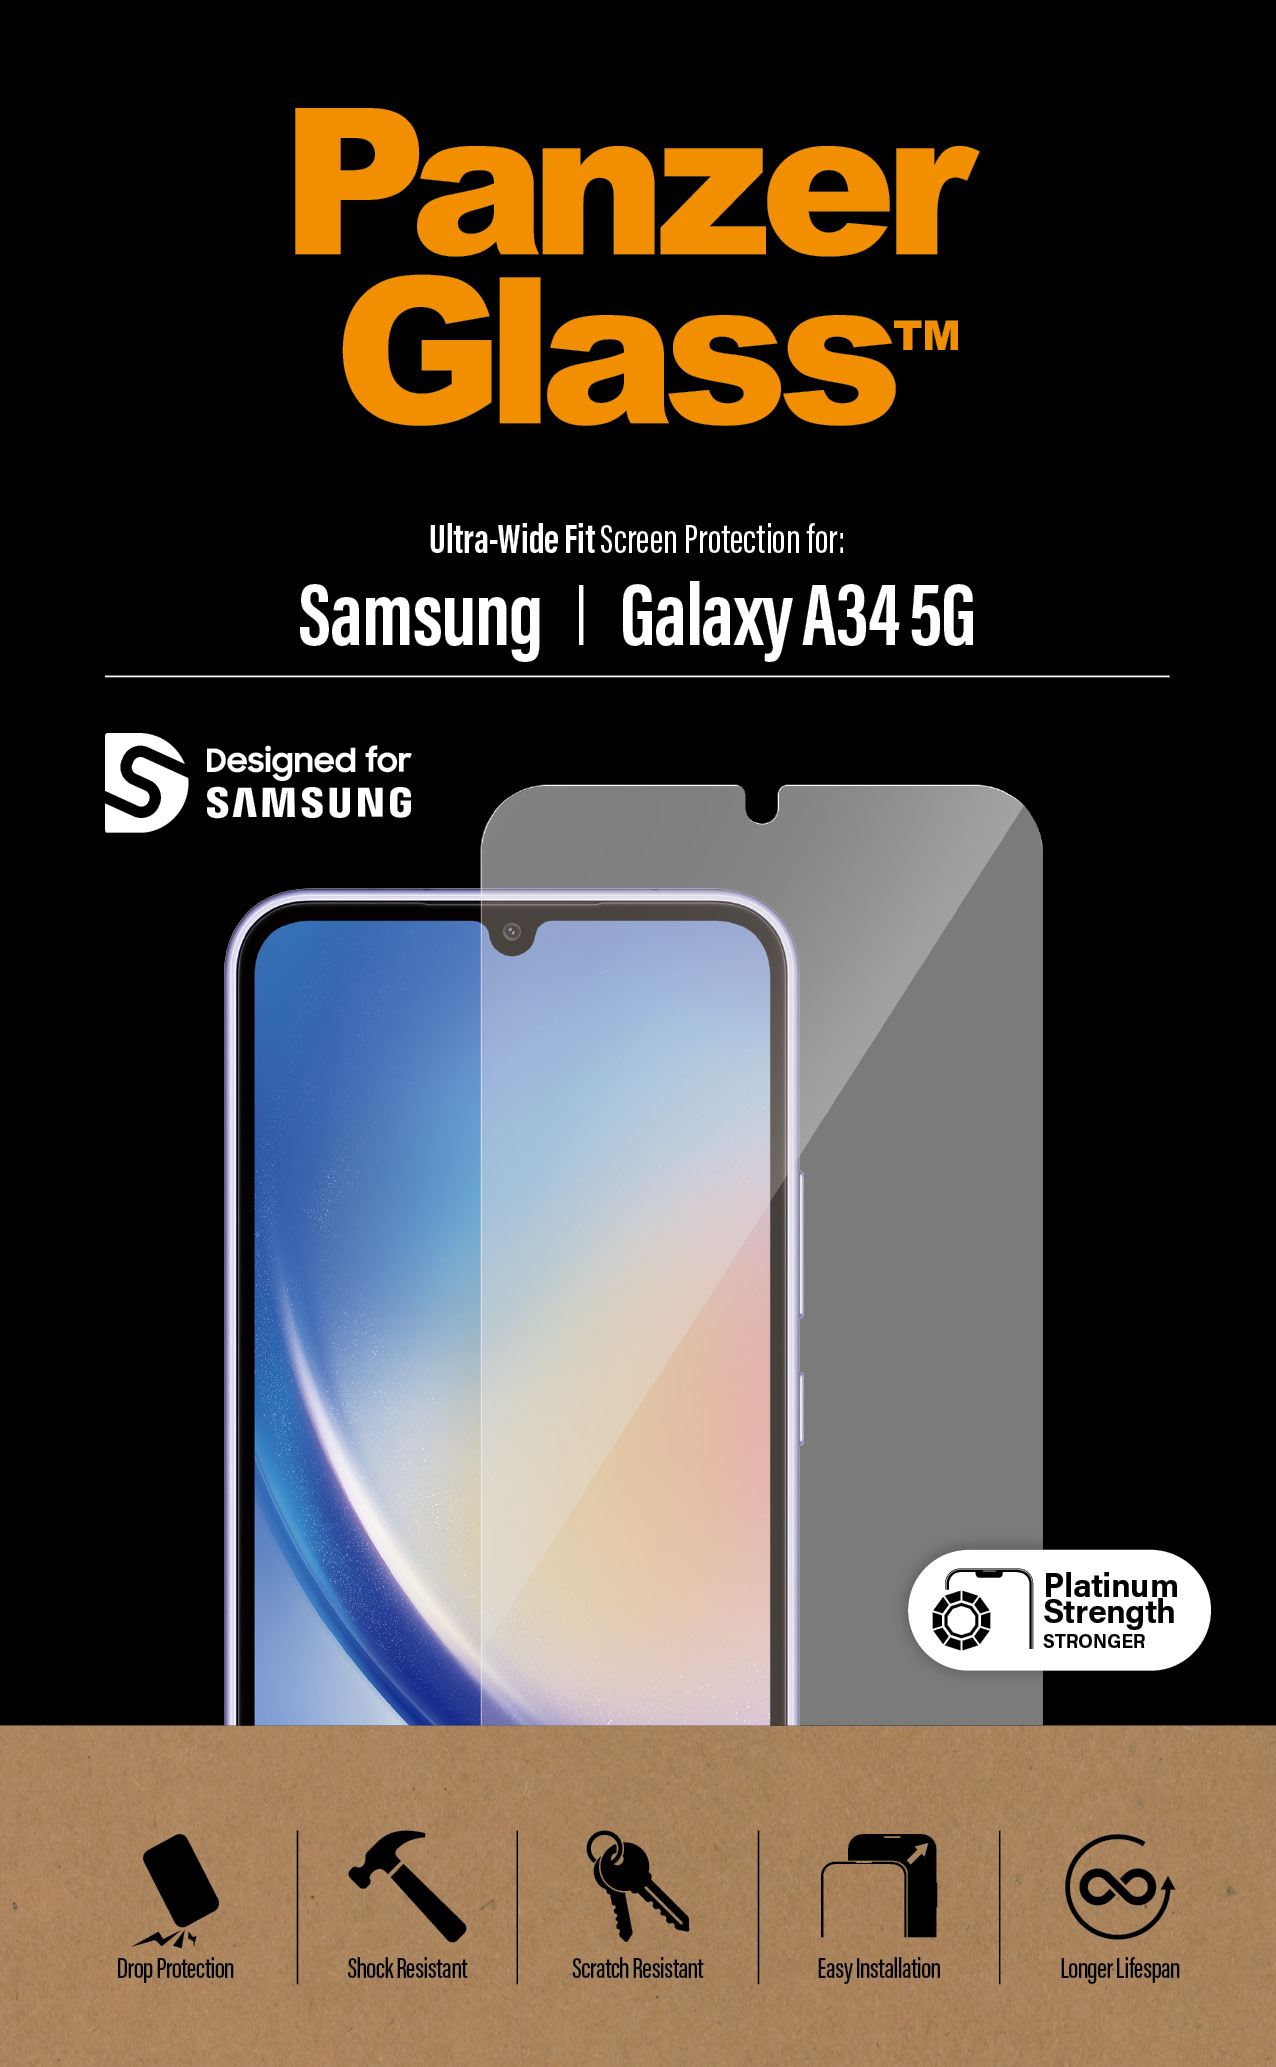 PanzerGlass Samsung Galaxy A34 5G - Ultra-Wide Fit